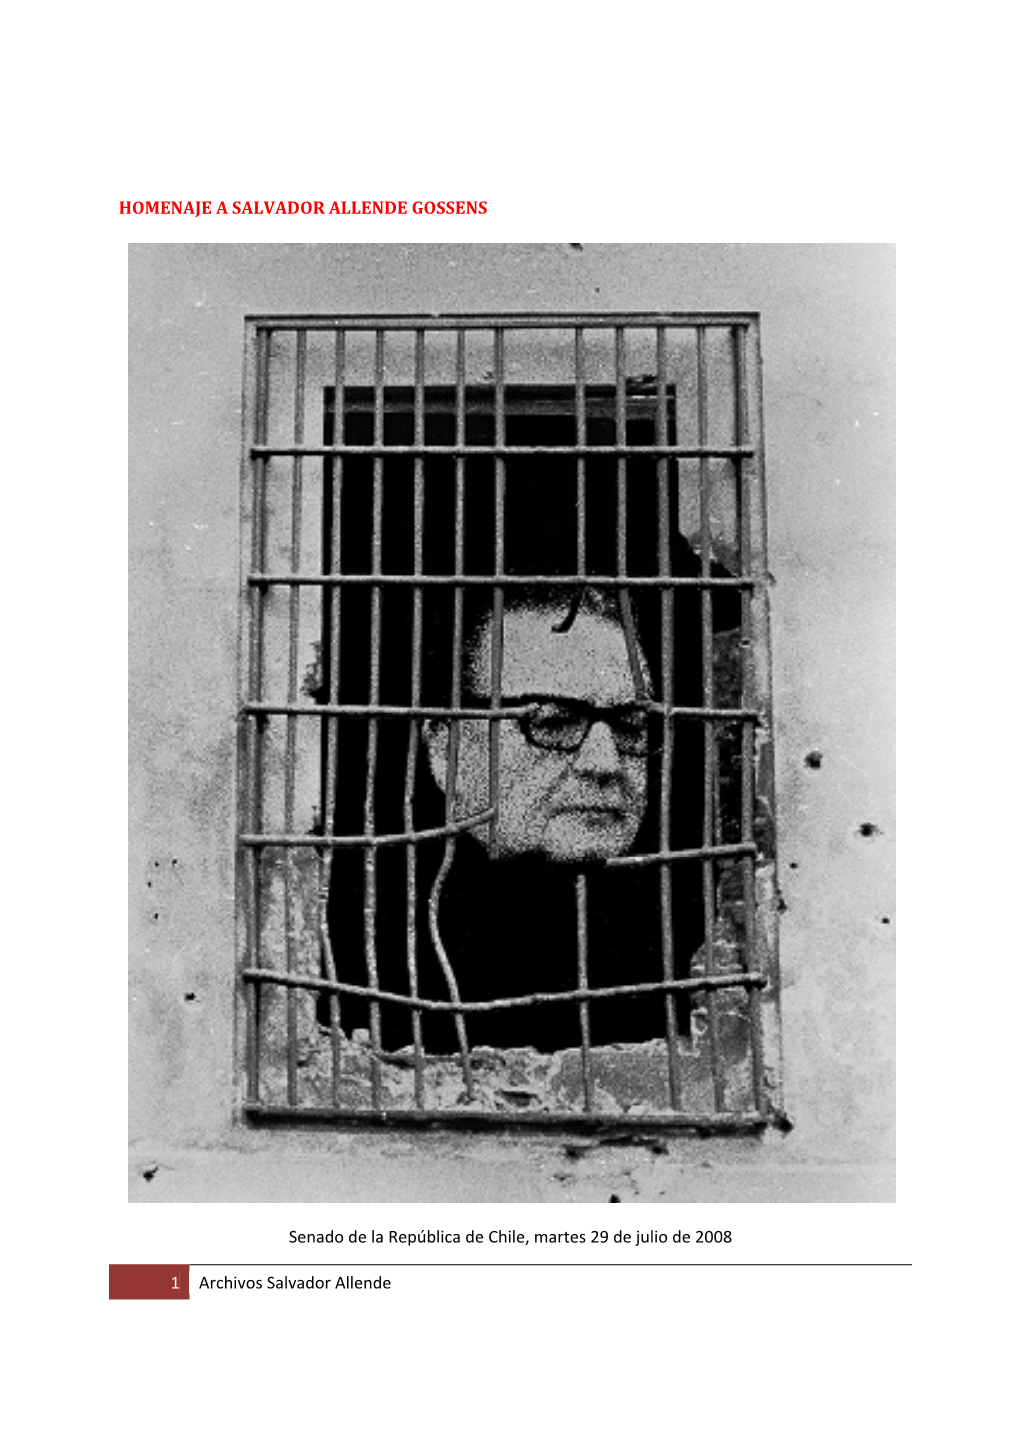 Homenaje a Salvador Allende En El Senado De La República